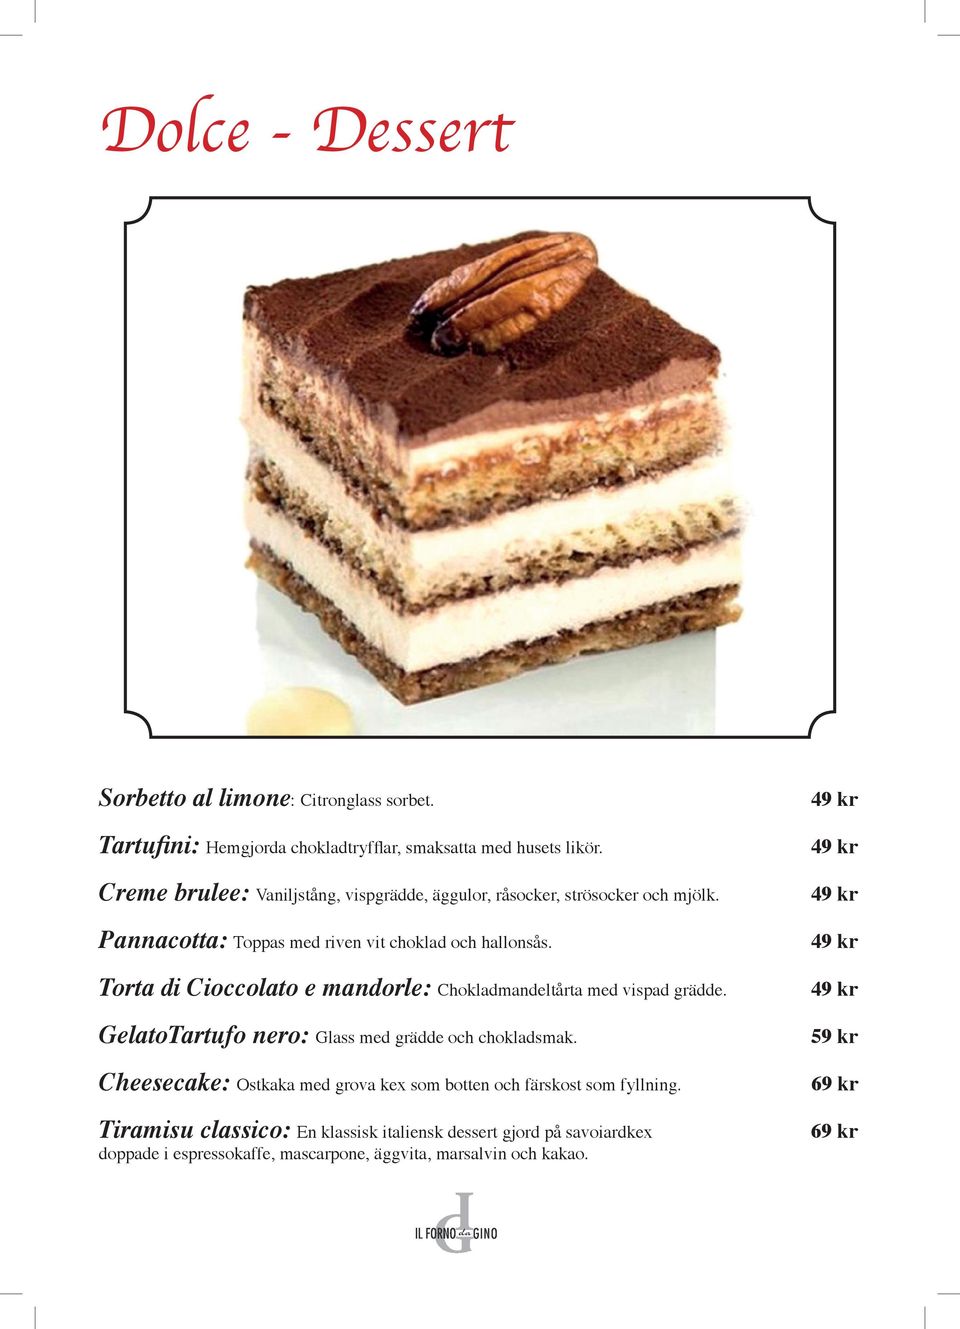 Torta di Cioccolato e mandorle: Chokladmandeltårta med vispad grädde. GelatoTartufo nero: Glass med grädde och chokladsmak.